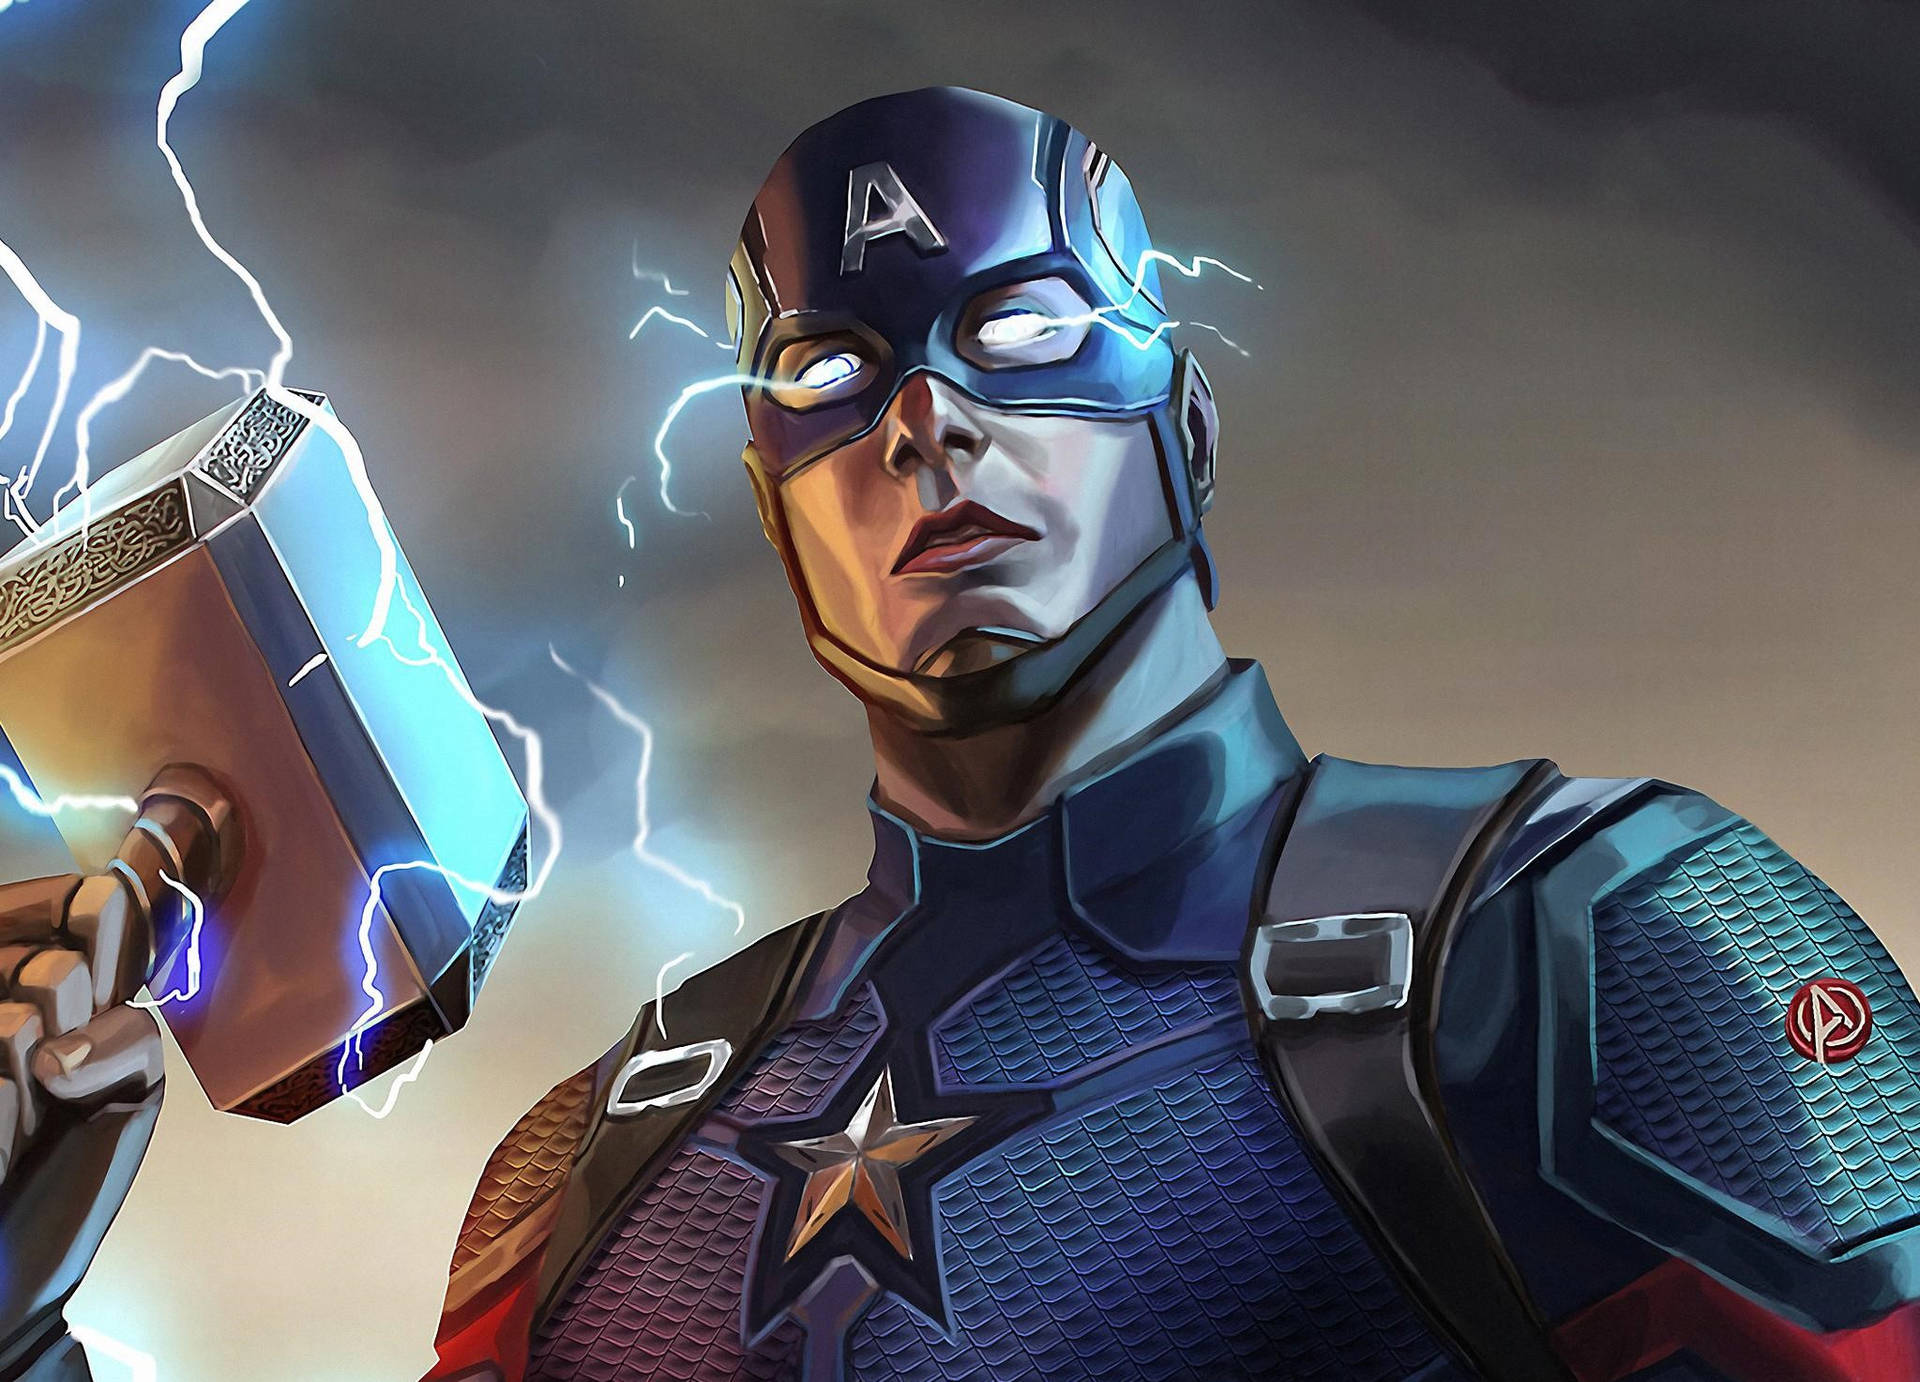 Ilmiglior Wallpaper Di Captain America Con Il Mjolnir E I Fulmini. Sfondo